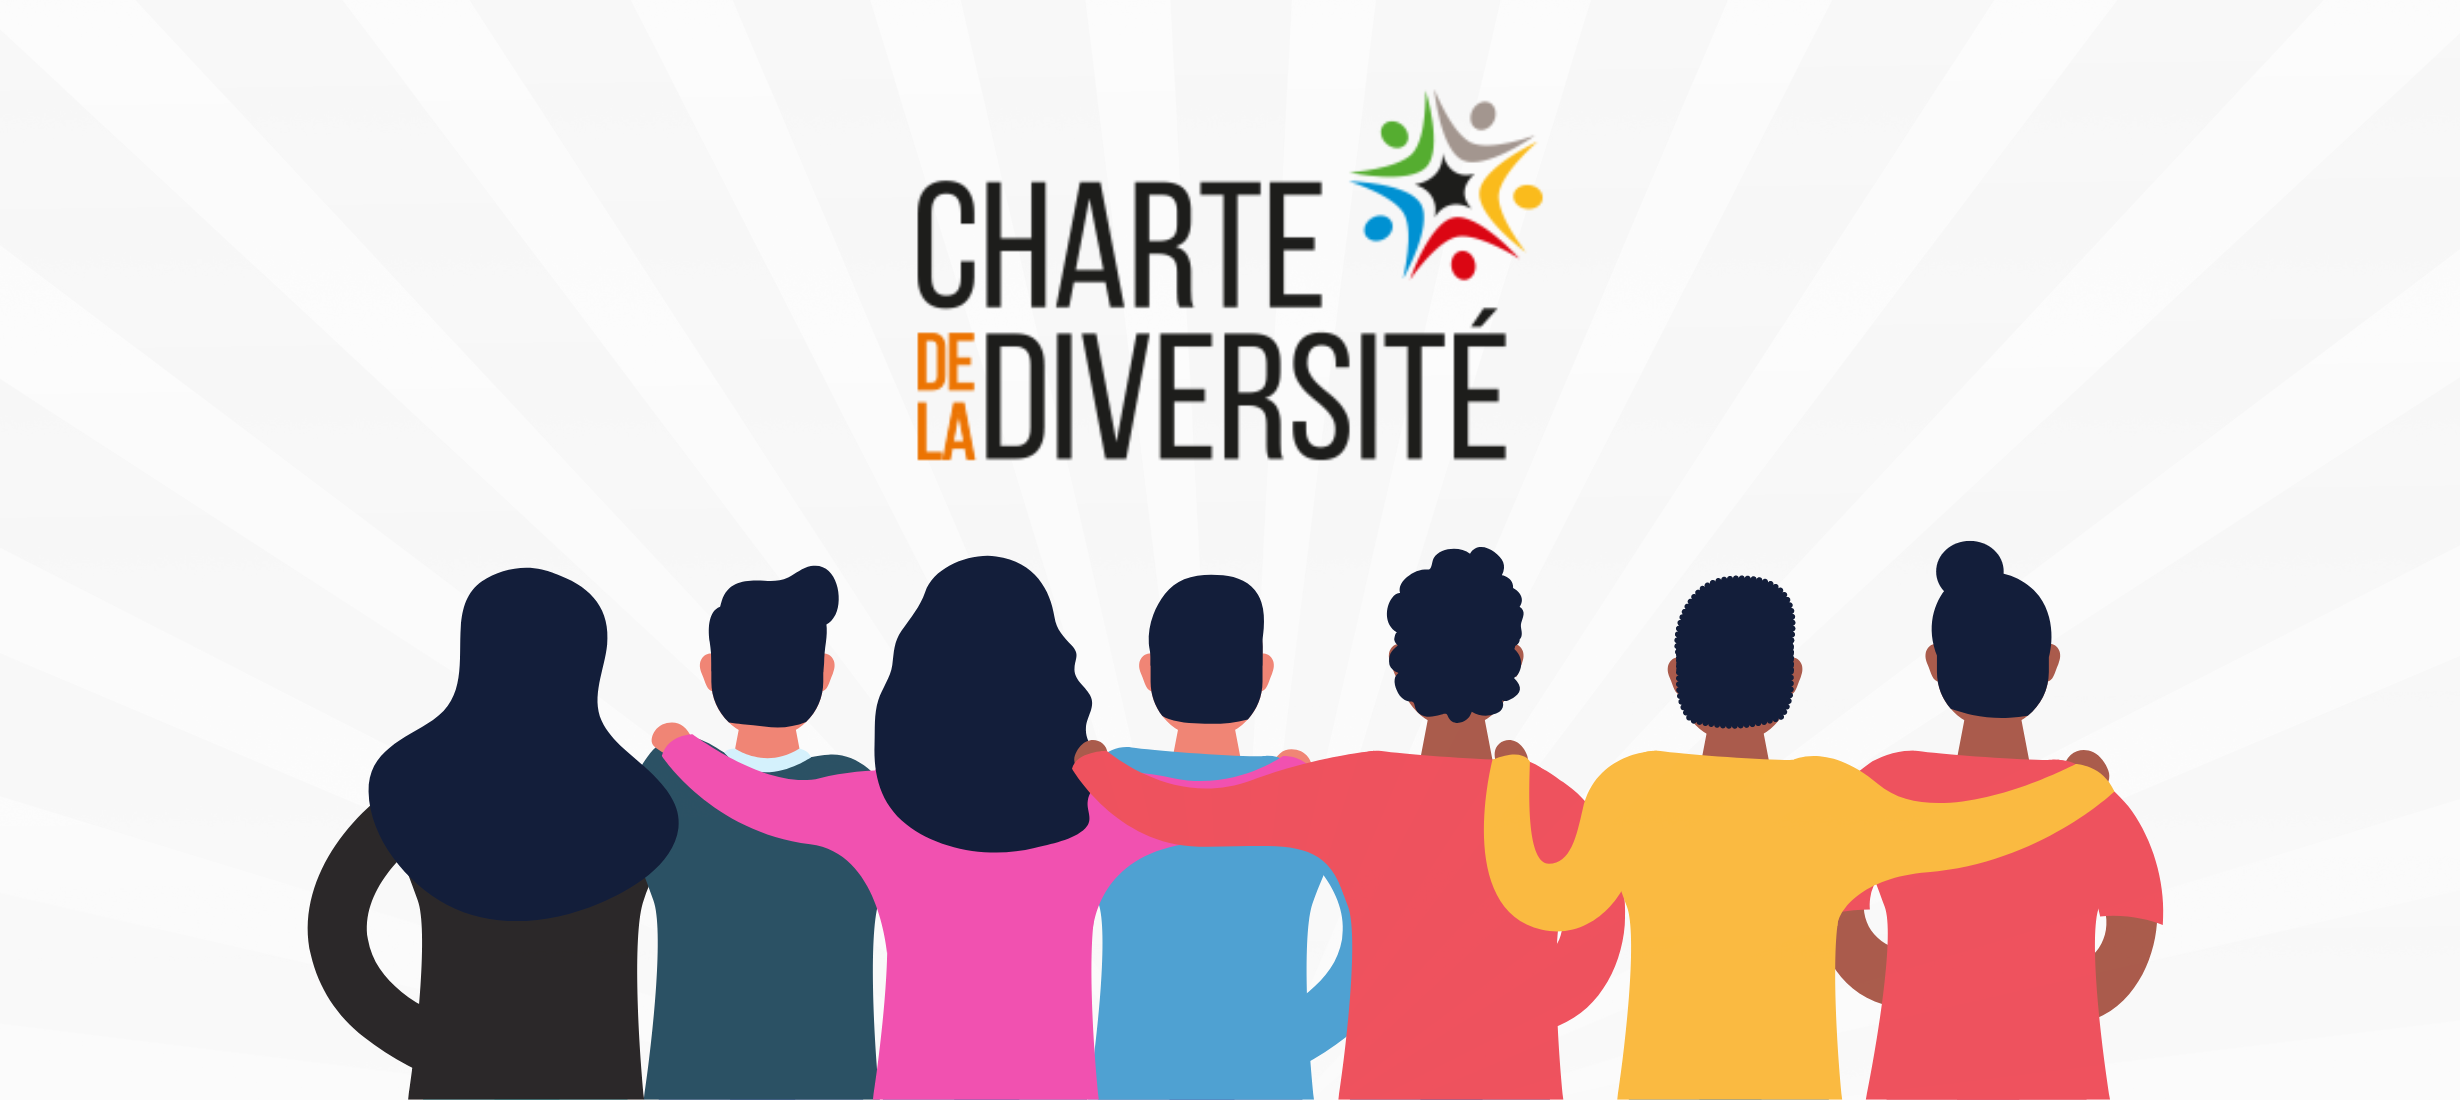 La Charte de la Diversité (Blogpost Cover)